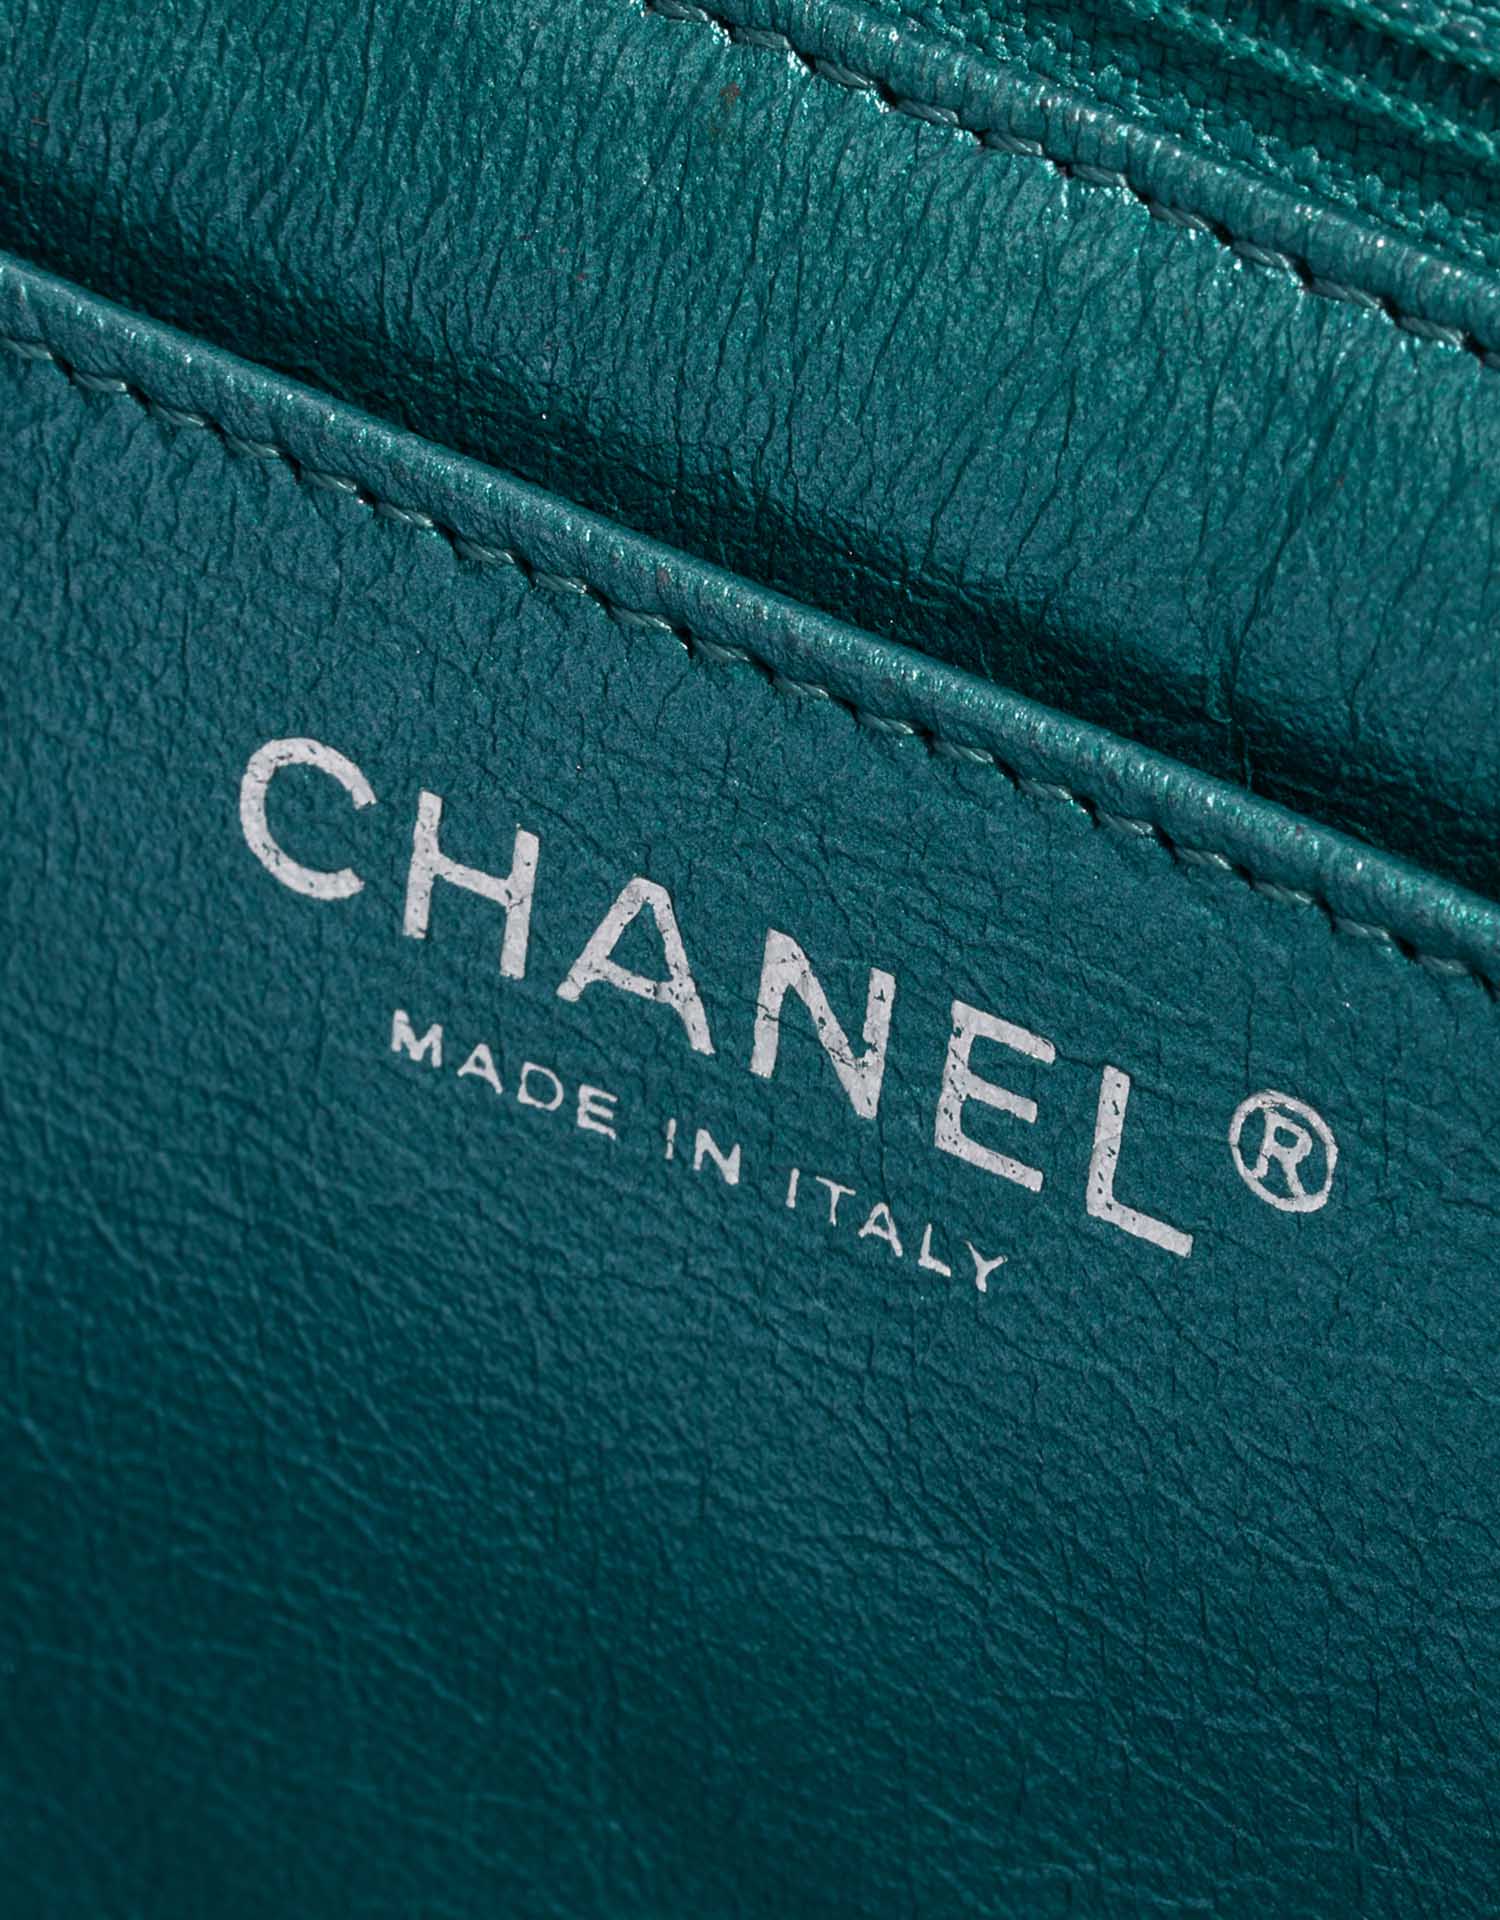 Gebrauchte Chanel Tasche 2.55 Reissue 226 Lammleder Metallic Blau Blau Logo | Verkaufen Sie Ihre Designer-Tasche auf Saclab.com